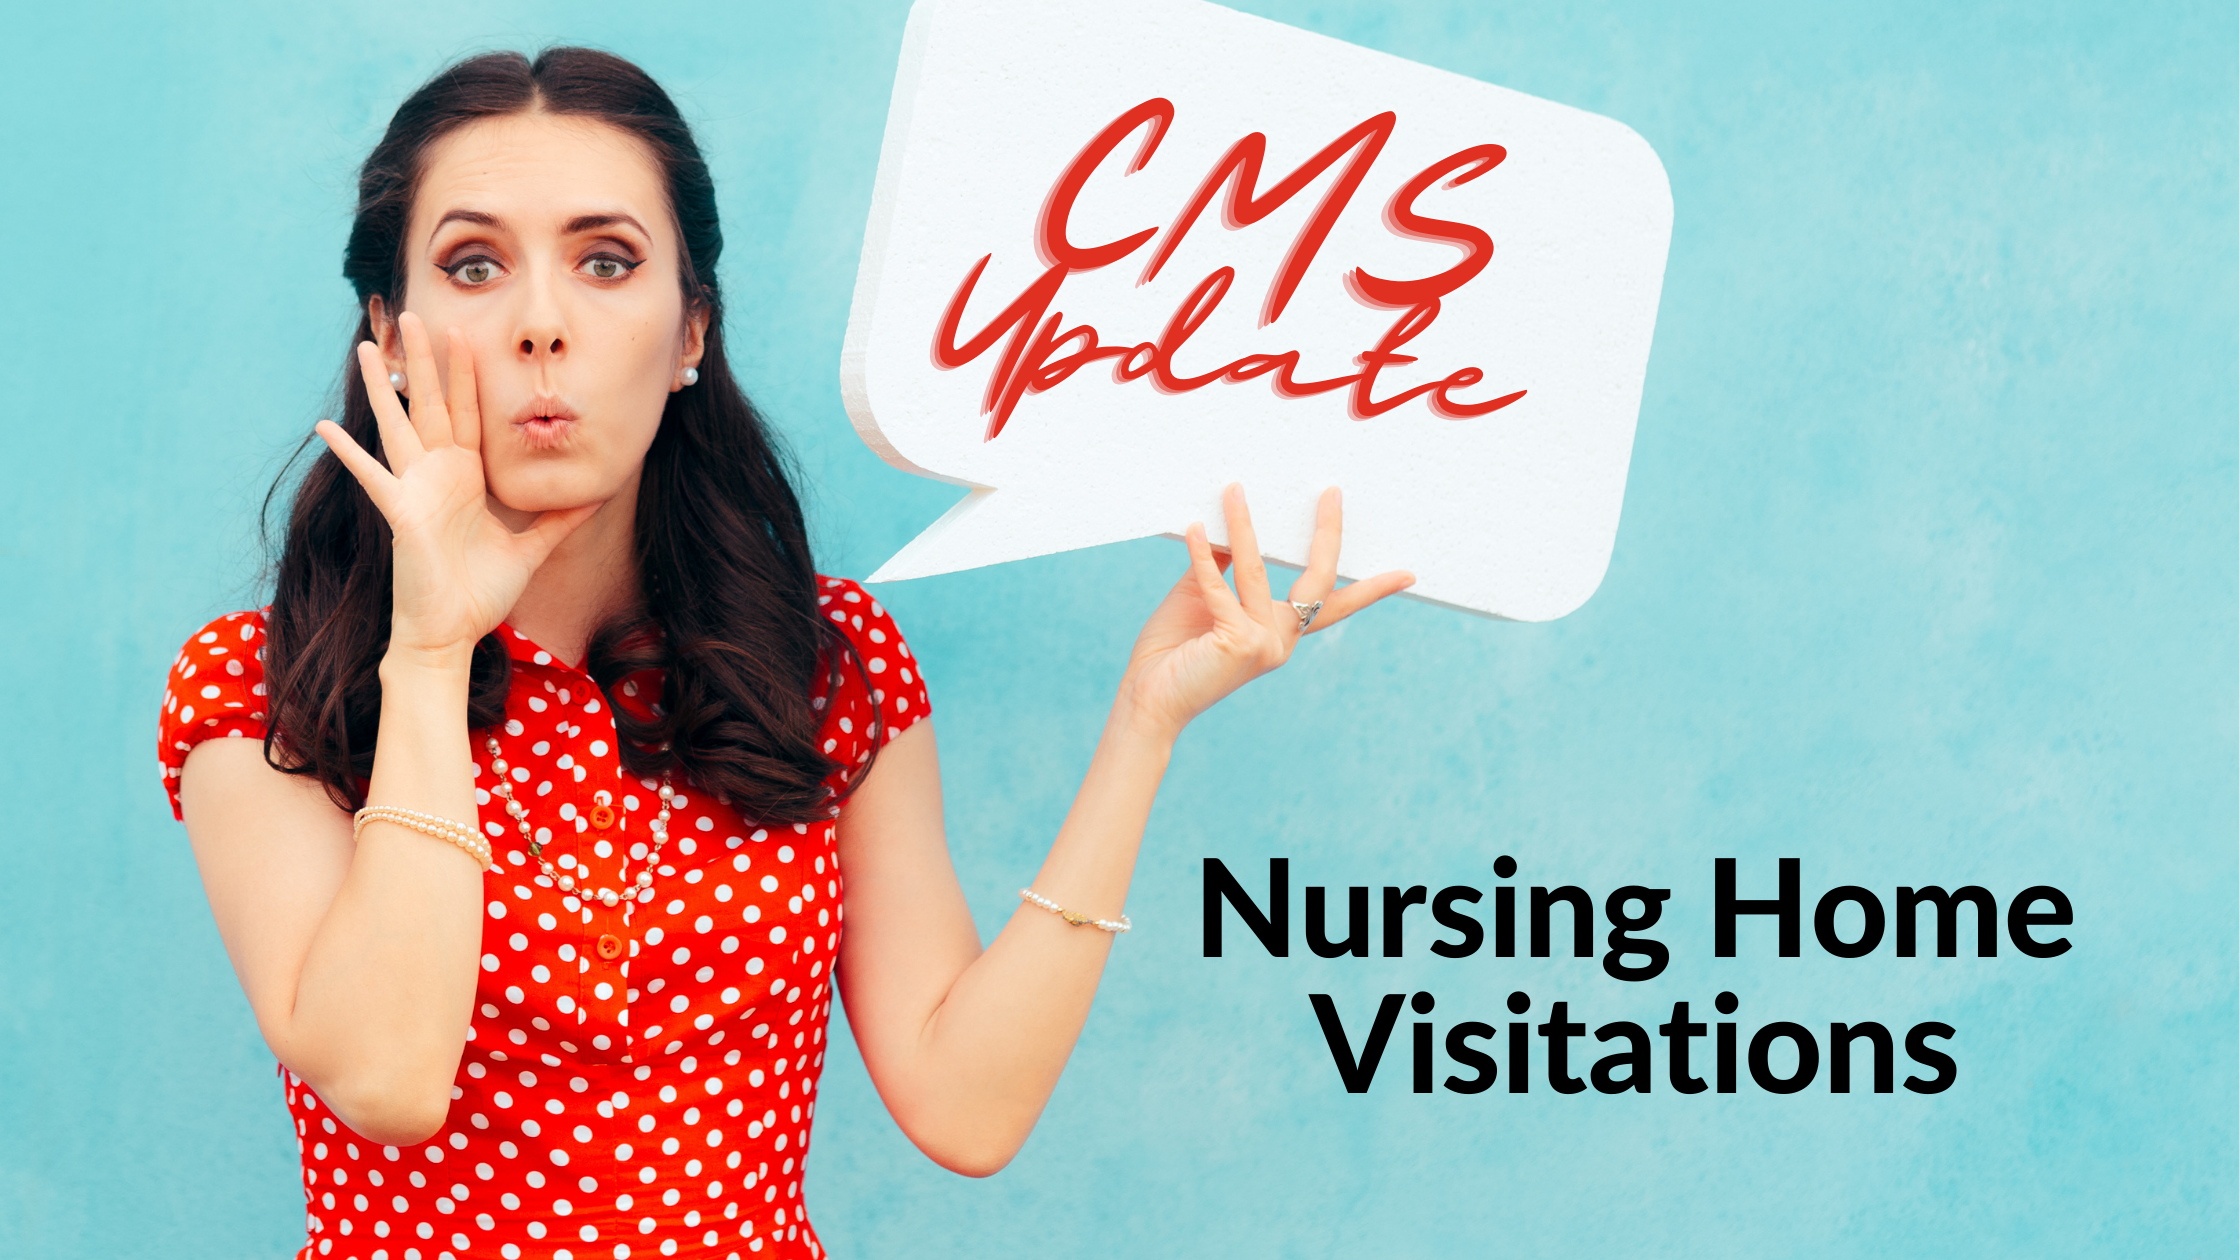 CMS Update: Nursing Home Visitation